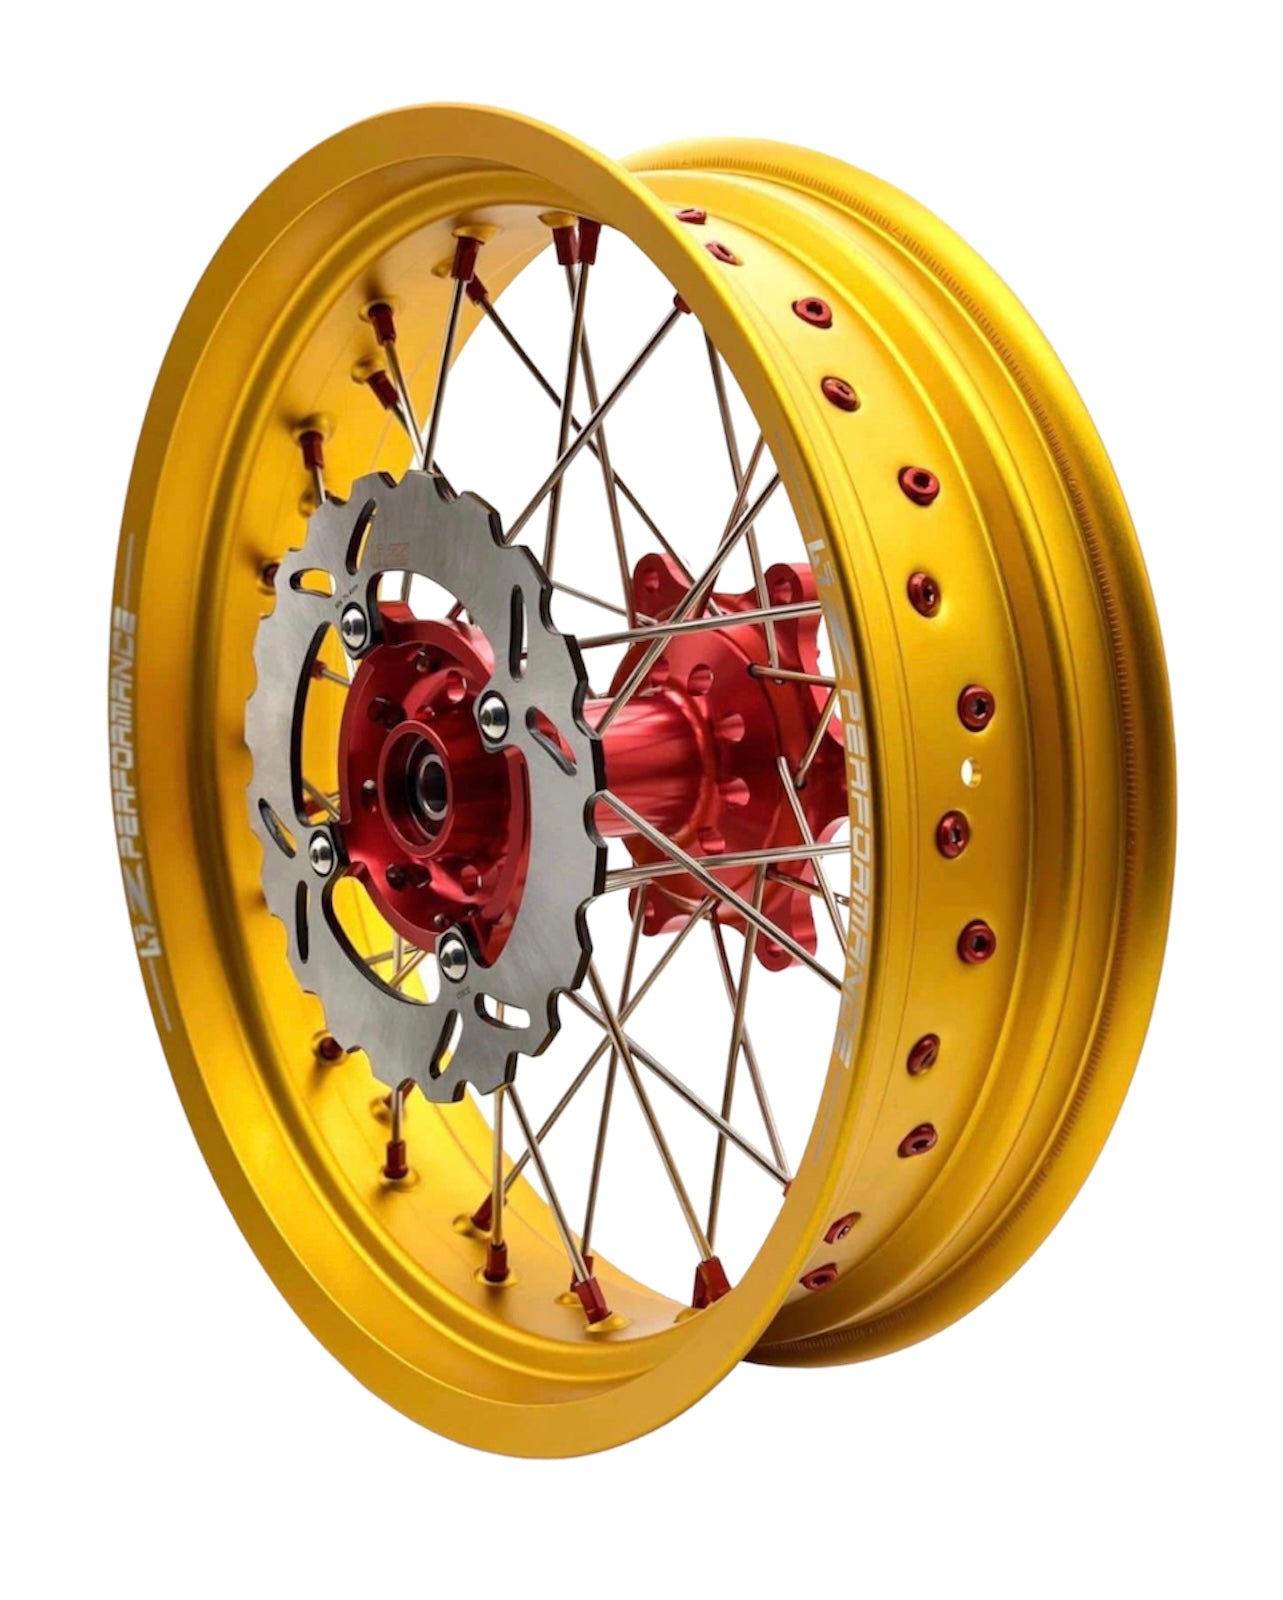 honda xr650l wheels